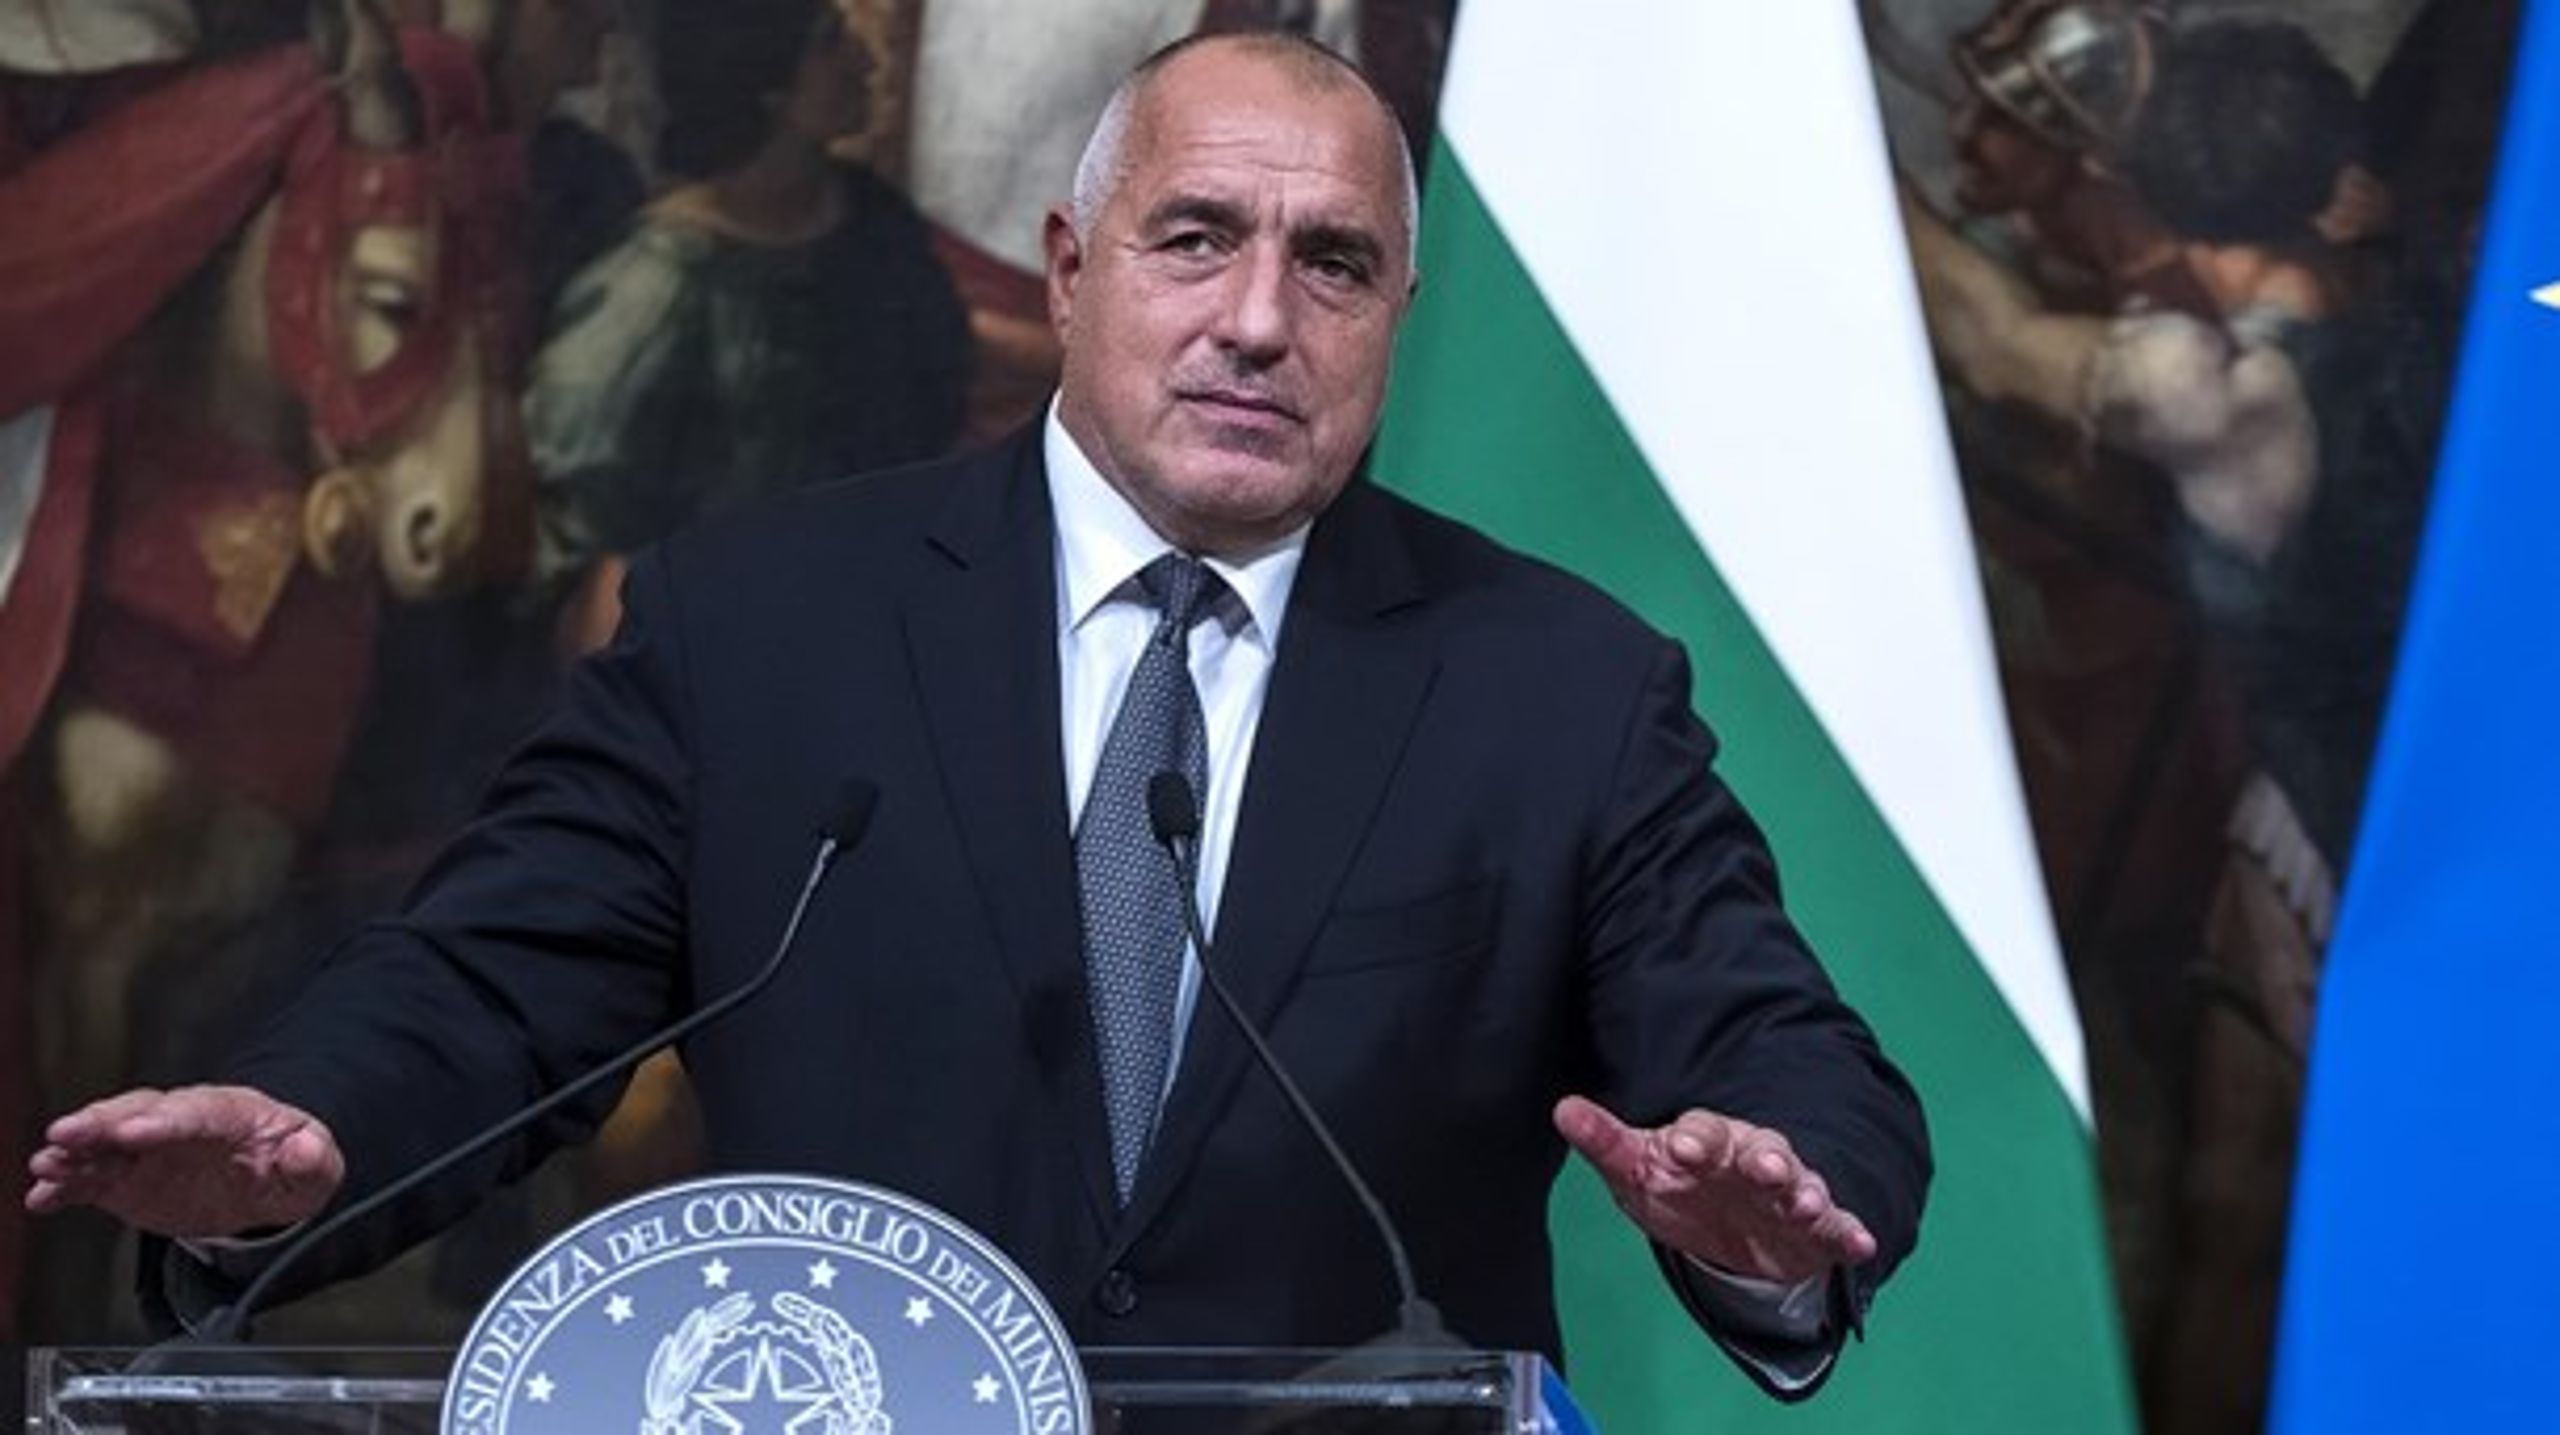 Bulgariens premierminister, den tidligere bokser Boyko Borissov, får fint besøg, når EU-spidserne kommer til Sofia i denne uge for at markere landets første EU-formandskab.